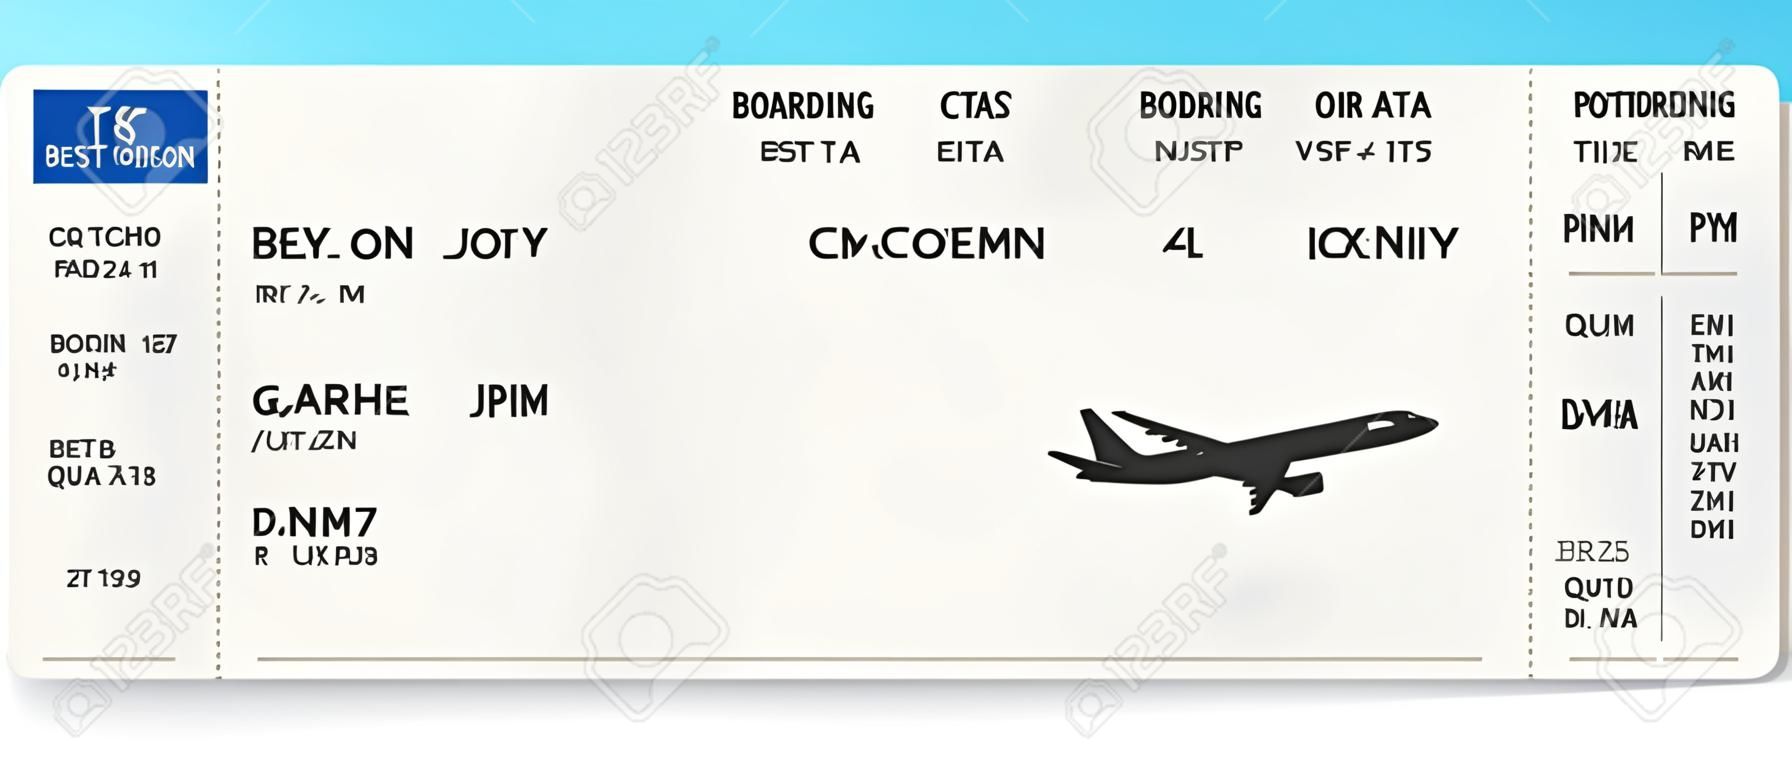 実物ではないフライト時間と乗客名を持つブルーのリアルな航空券または搭乗券の設計。搭乗券のパターンのベクトルイラスト